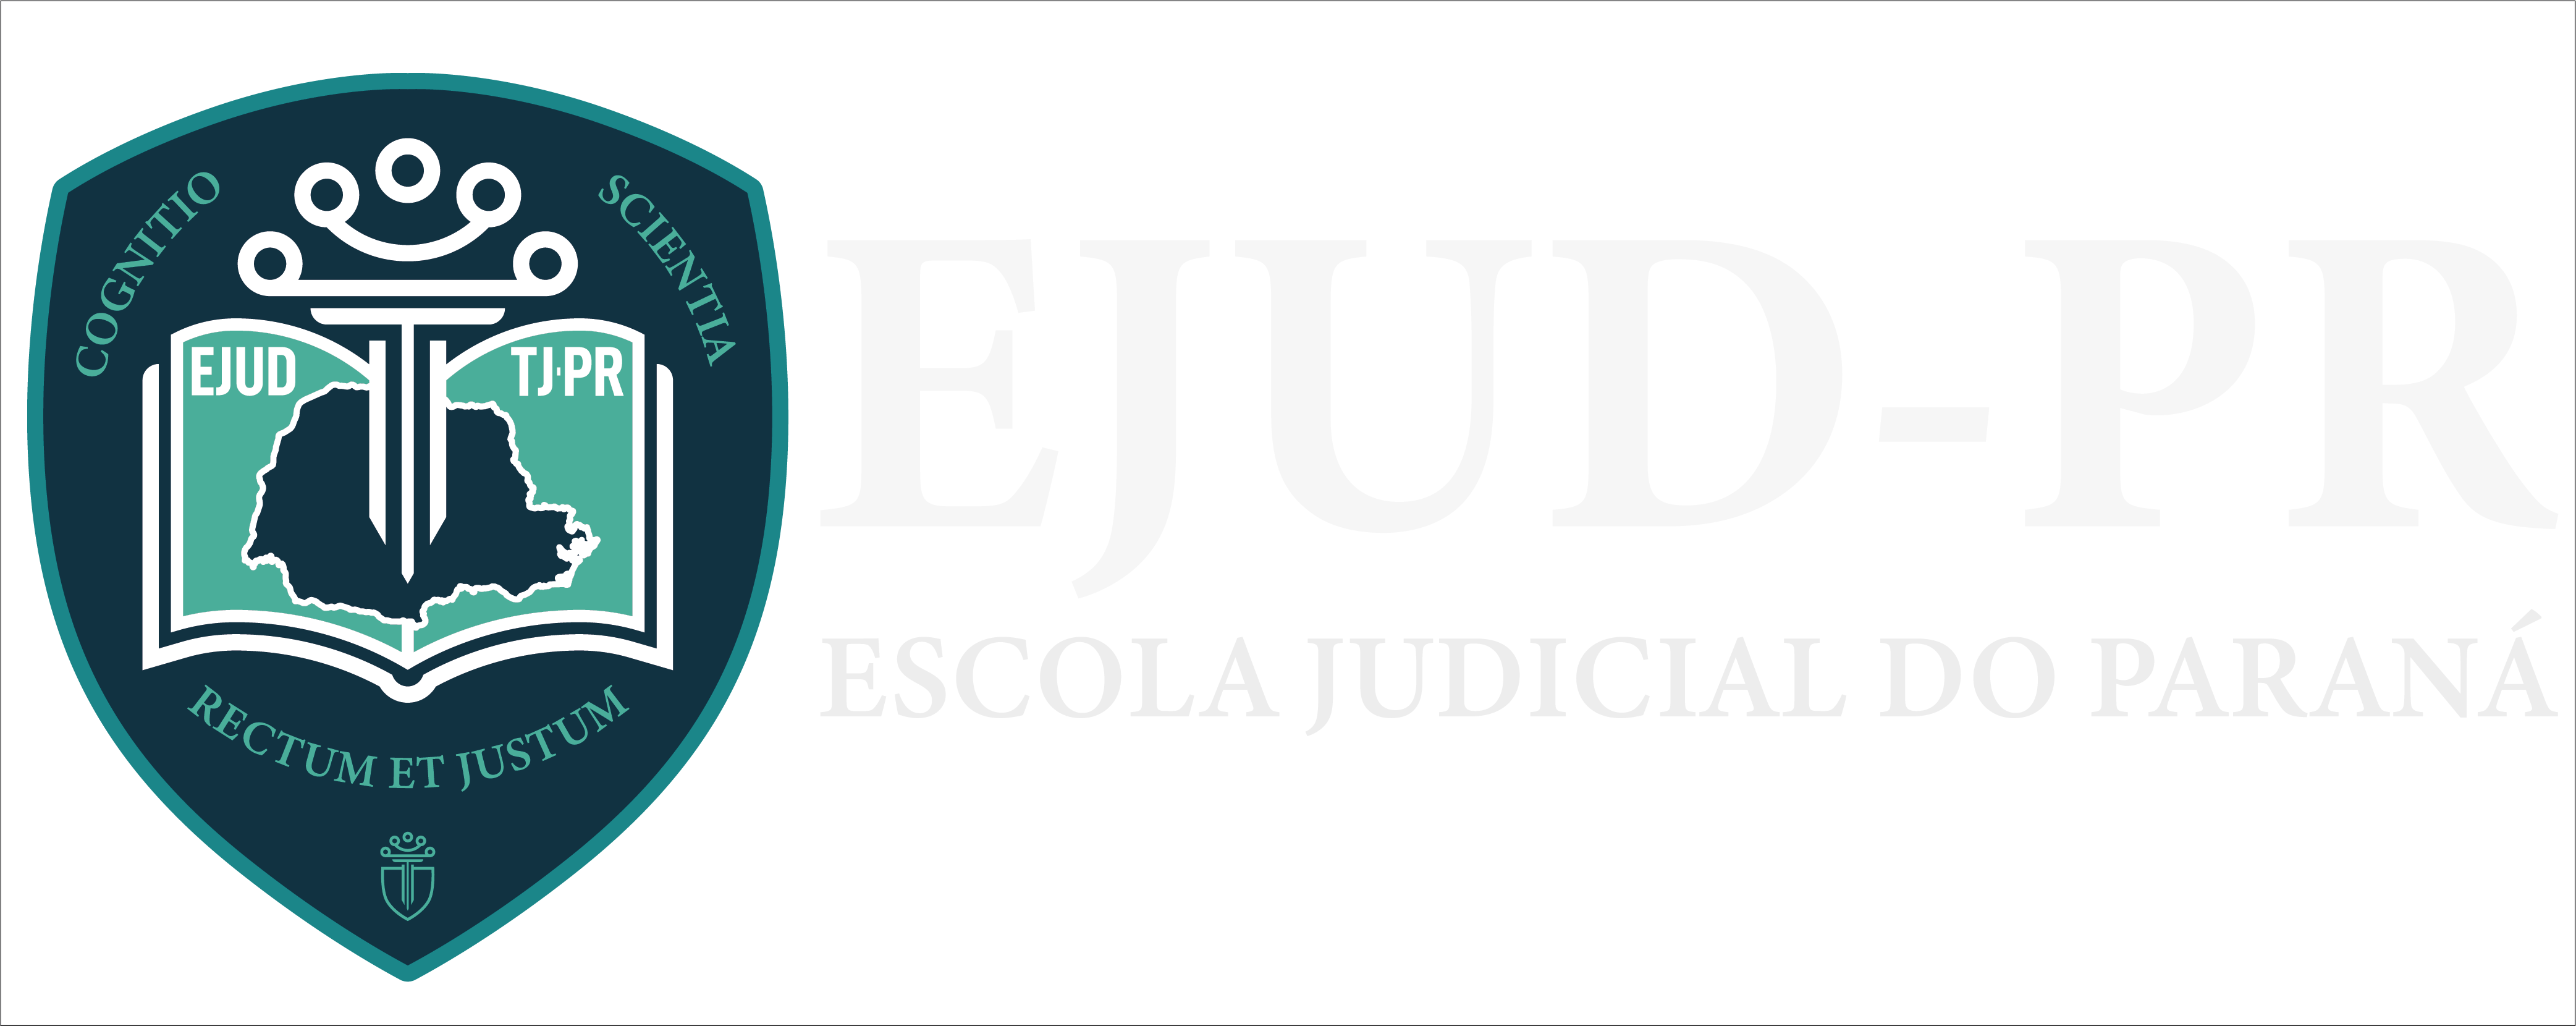 Escola Judicial do Paraná | Tribunal de Justiça do Paraná